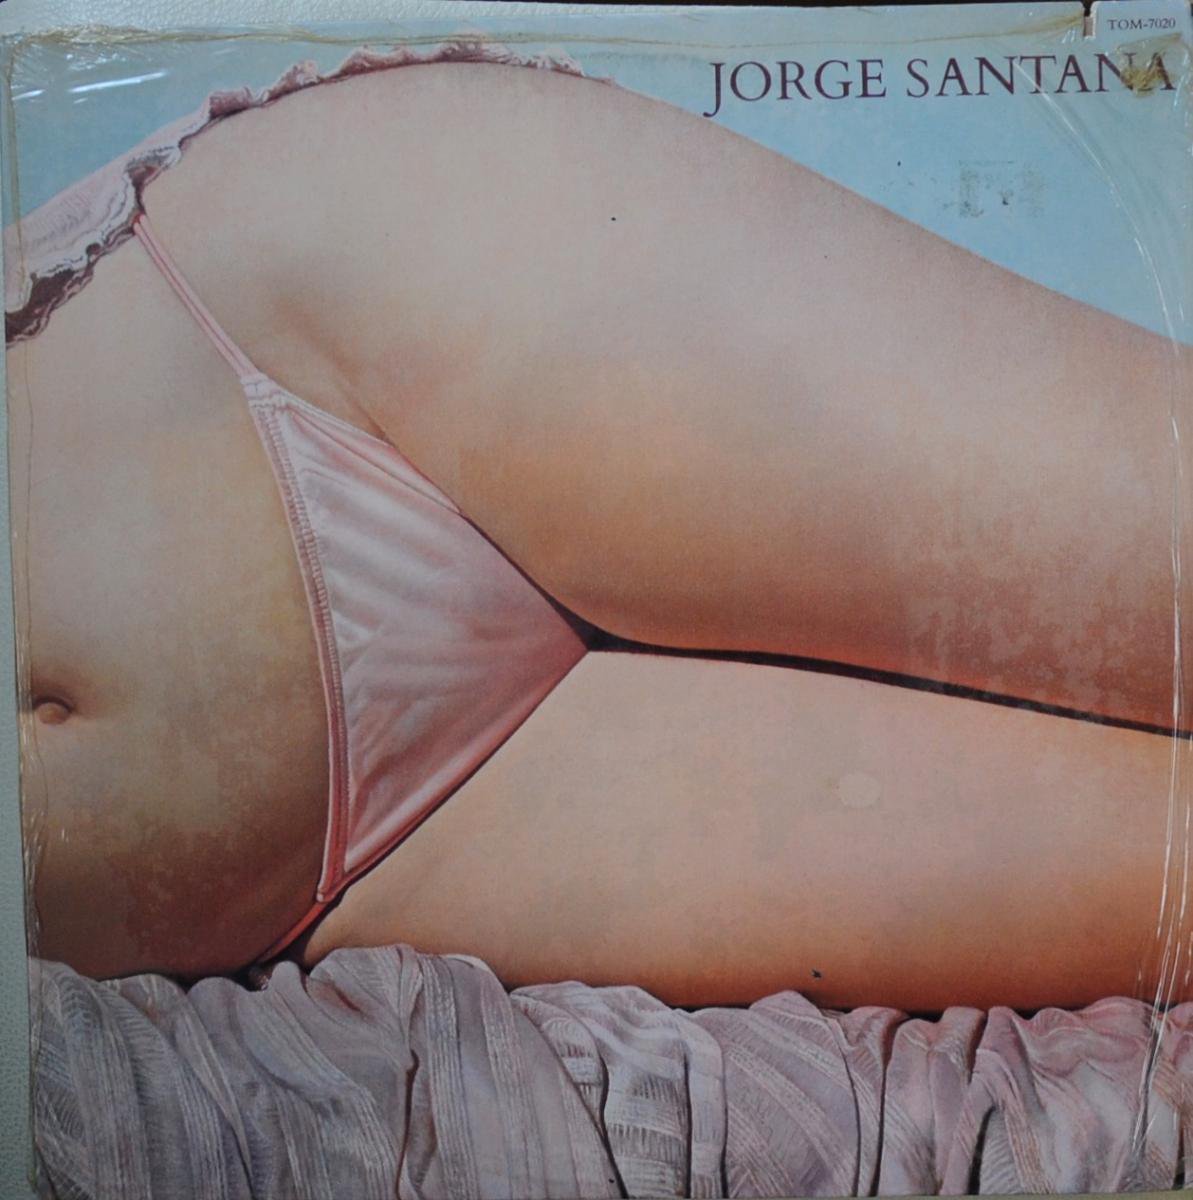 JORGE SANTANA / JORGE SANTANA (LP) - HIP TANK RECORDS